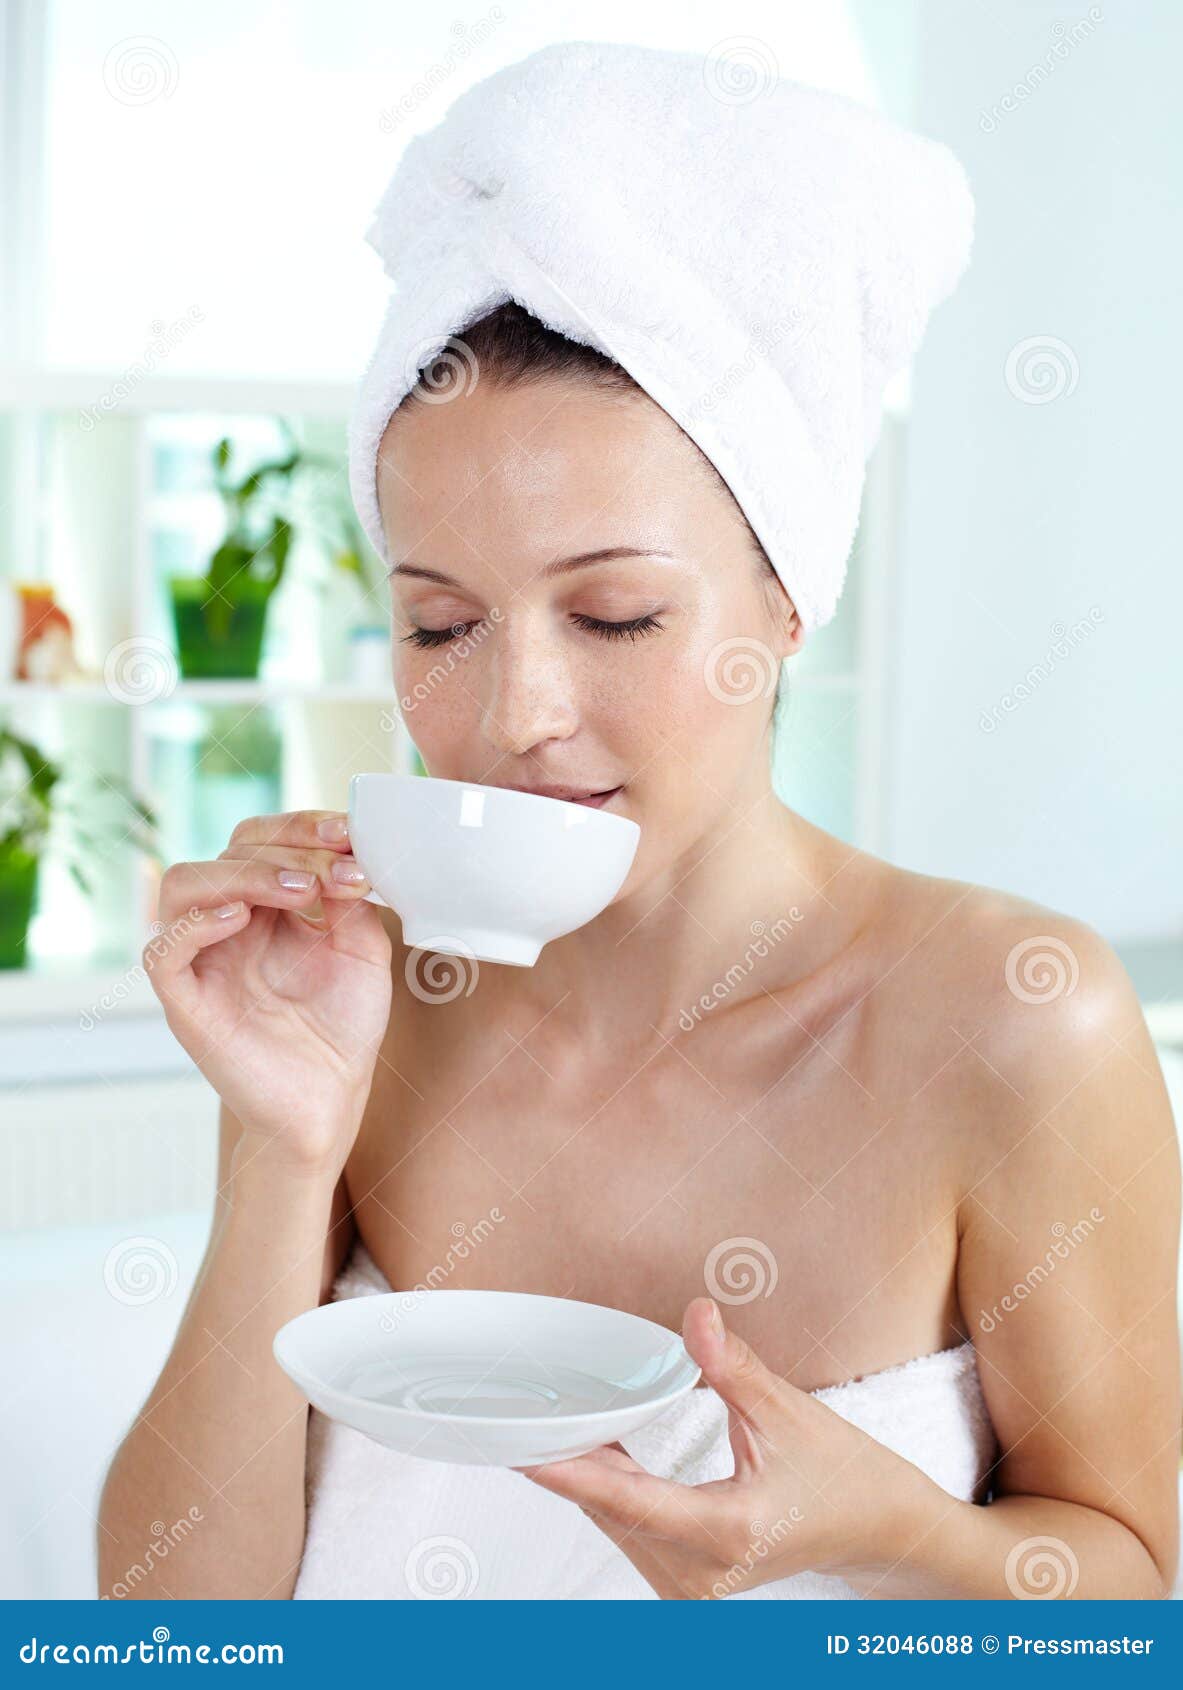 Enjoying tea stock photo. Image of holding, aromatic - 32046088